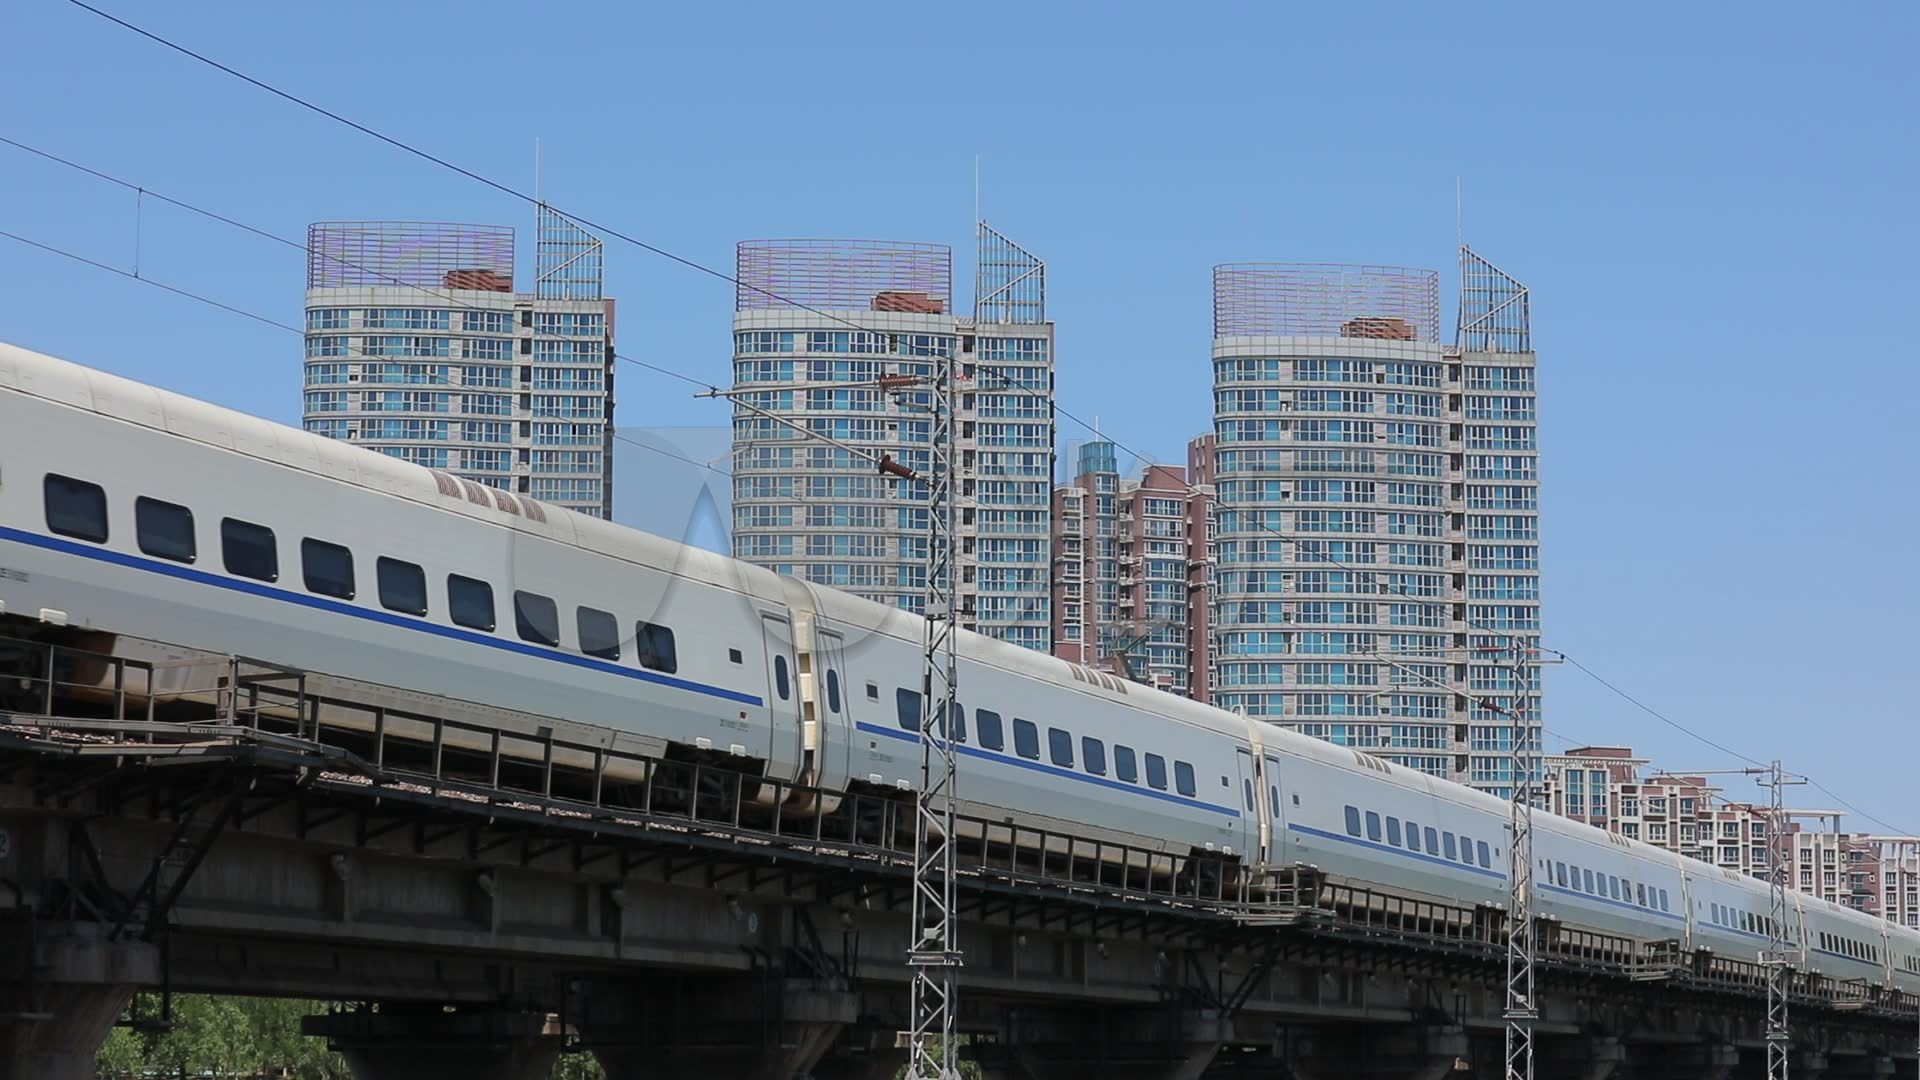 【科普向】中国铁路和谐号电力动车组介绍（二） - 哔哩哔哩